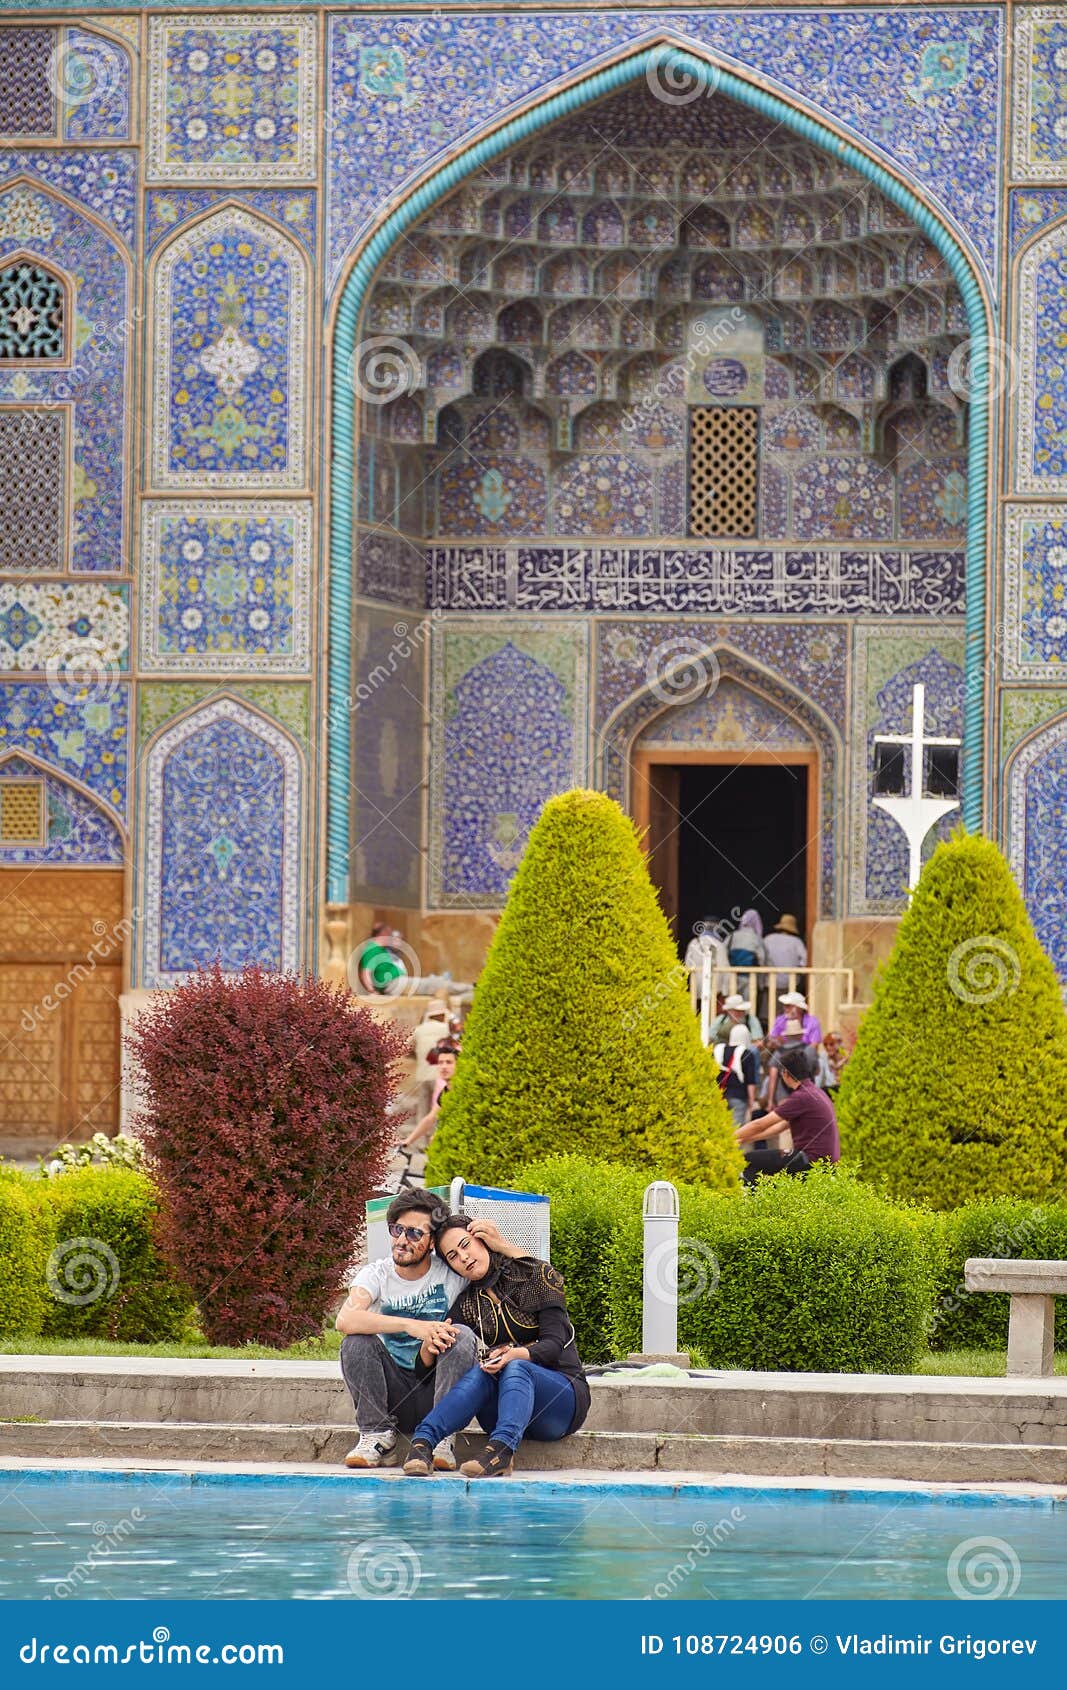 In Isfahan women dating women Local Women